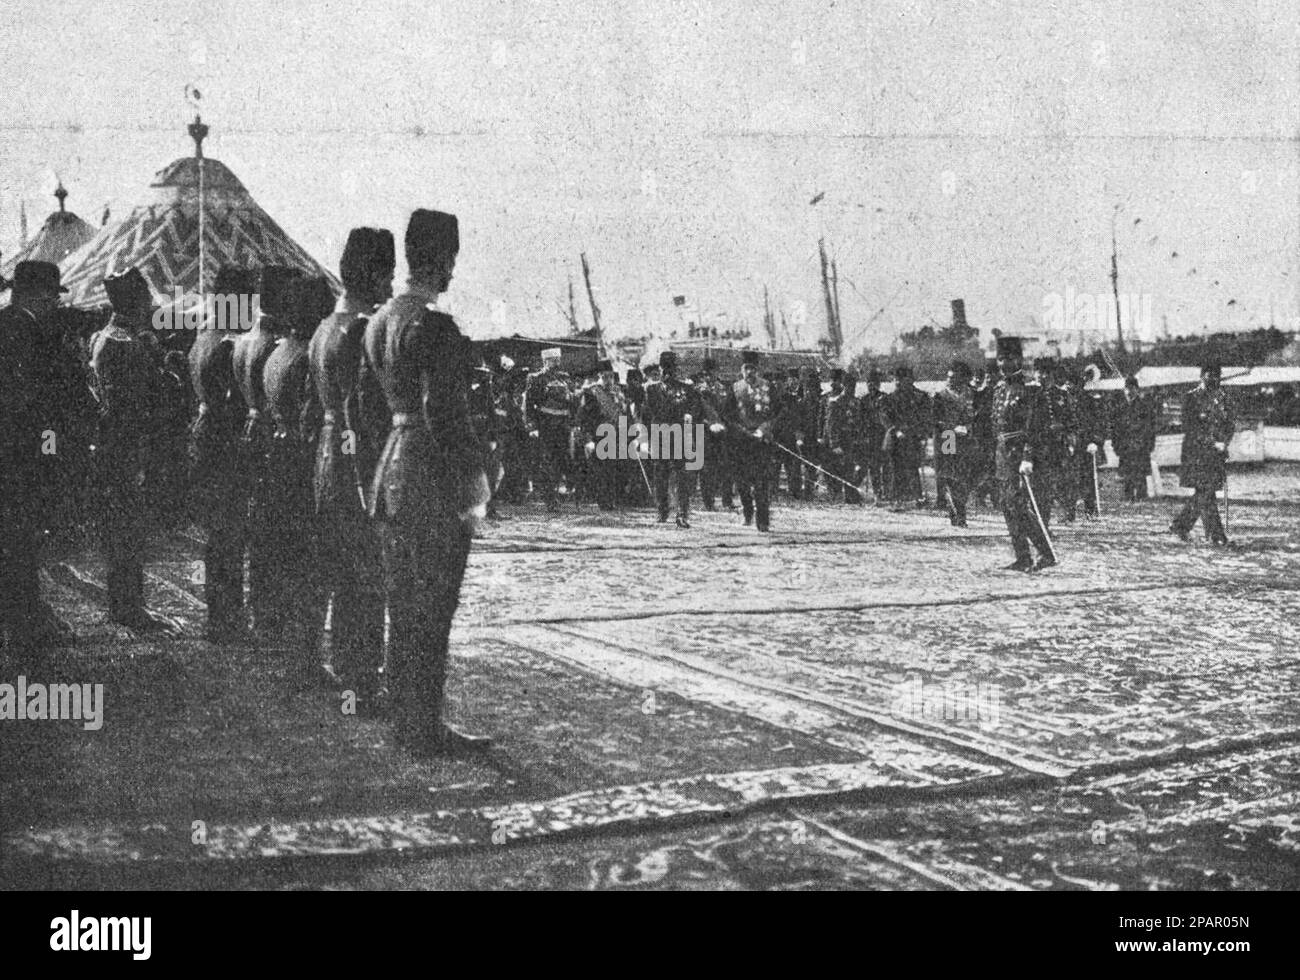 Arrivée de Ferdinand I de Bulgarie à Constantinople. Photo de 1910. Banque D'Images